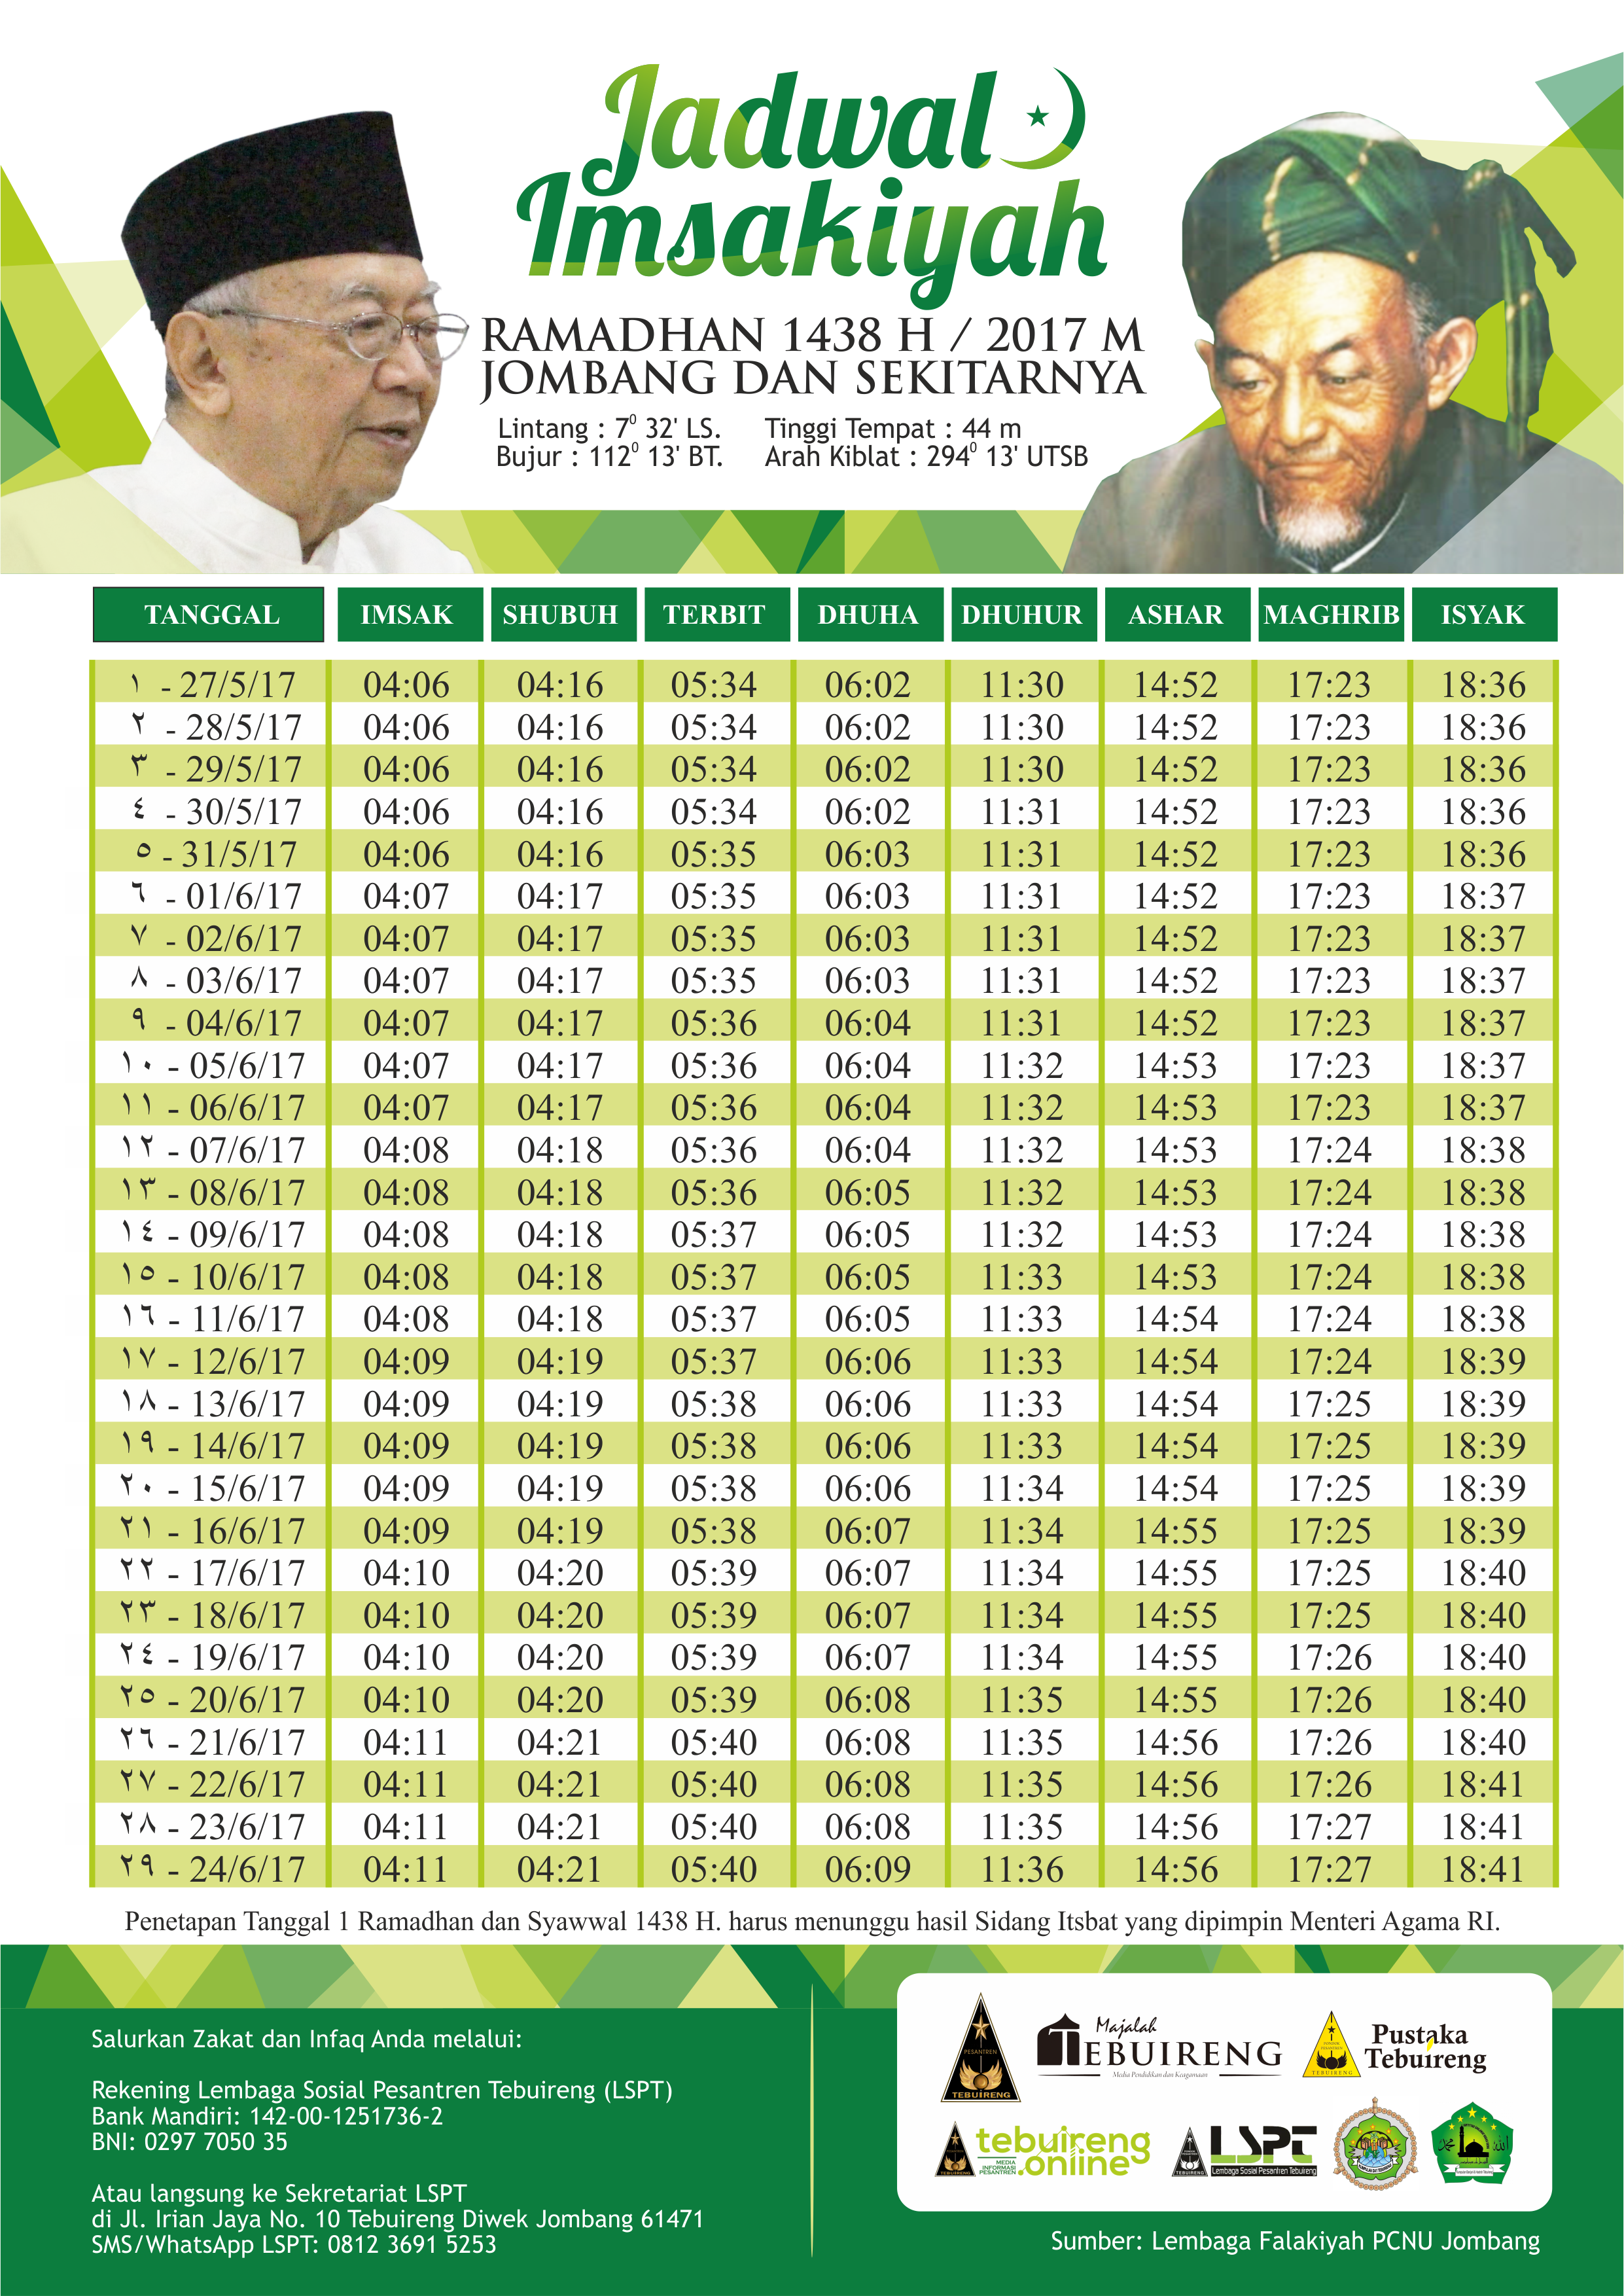 Jadwal Imsakiyah Ramadhan 1438 H / 2017 M. Daerah Jombang 